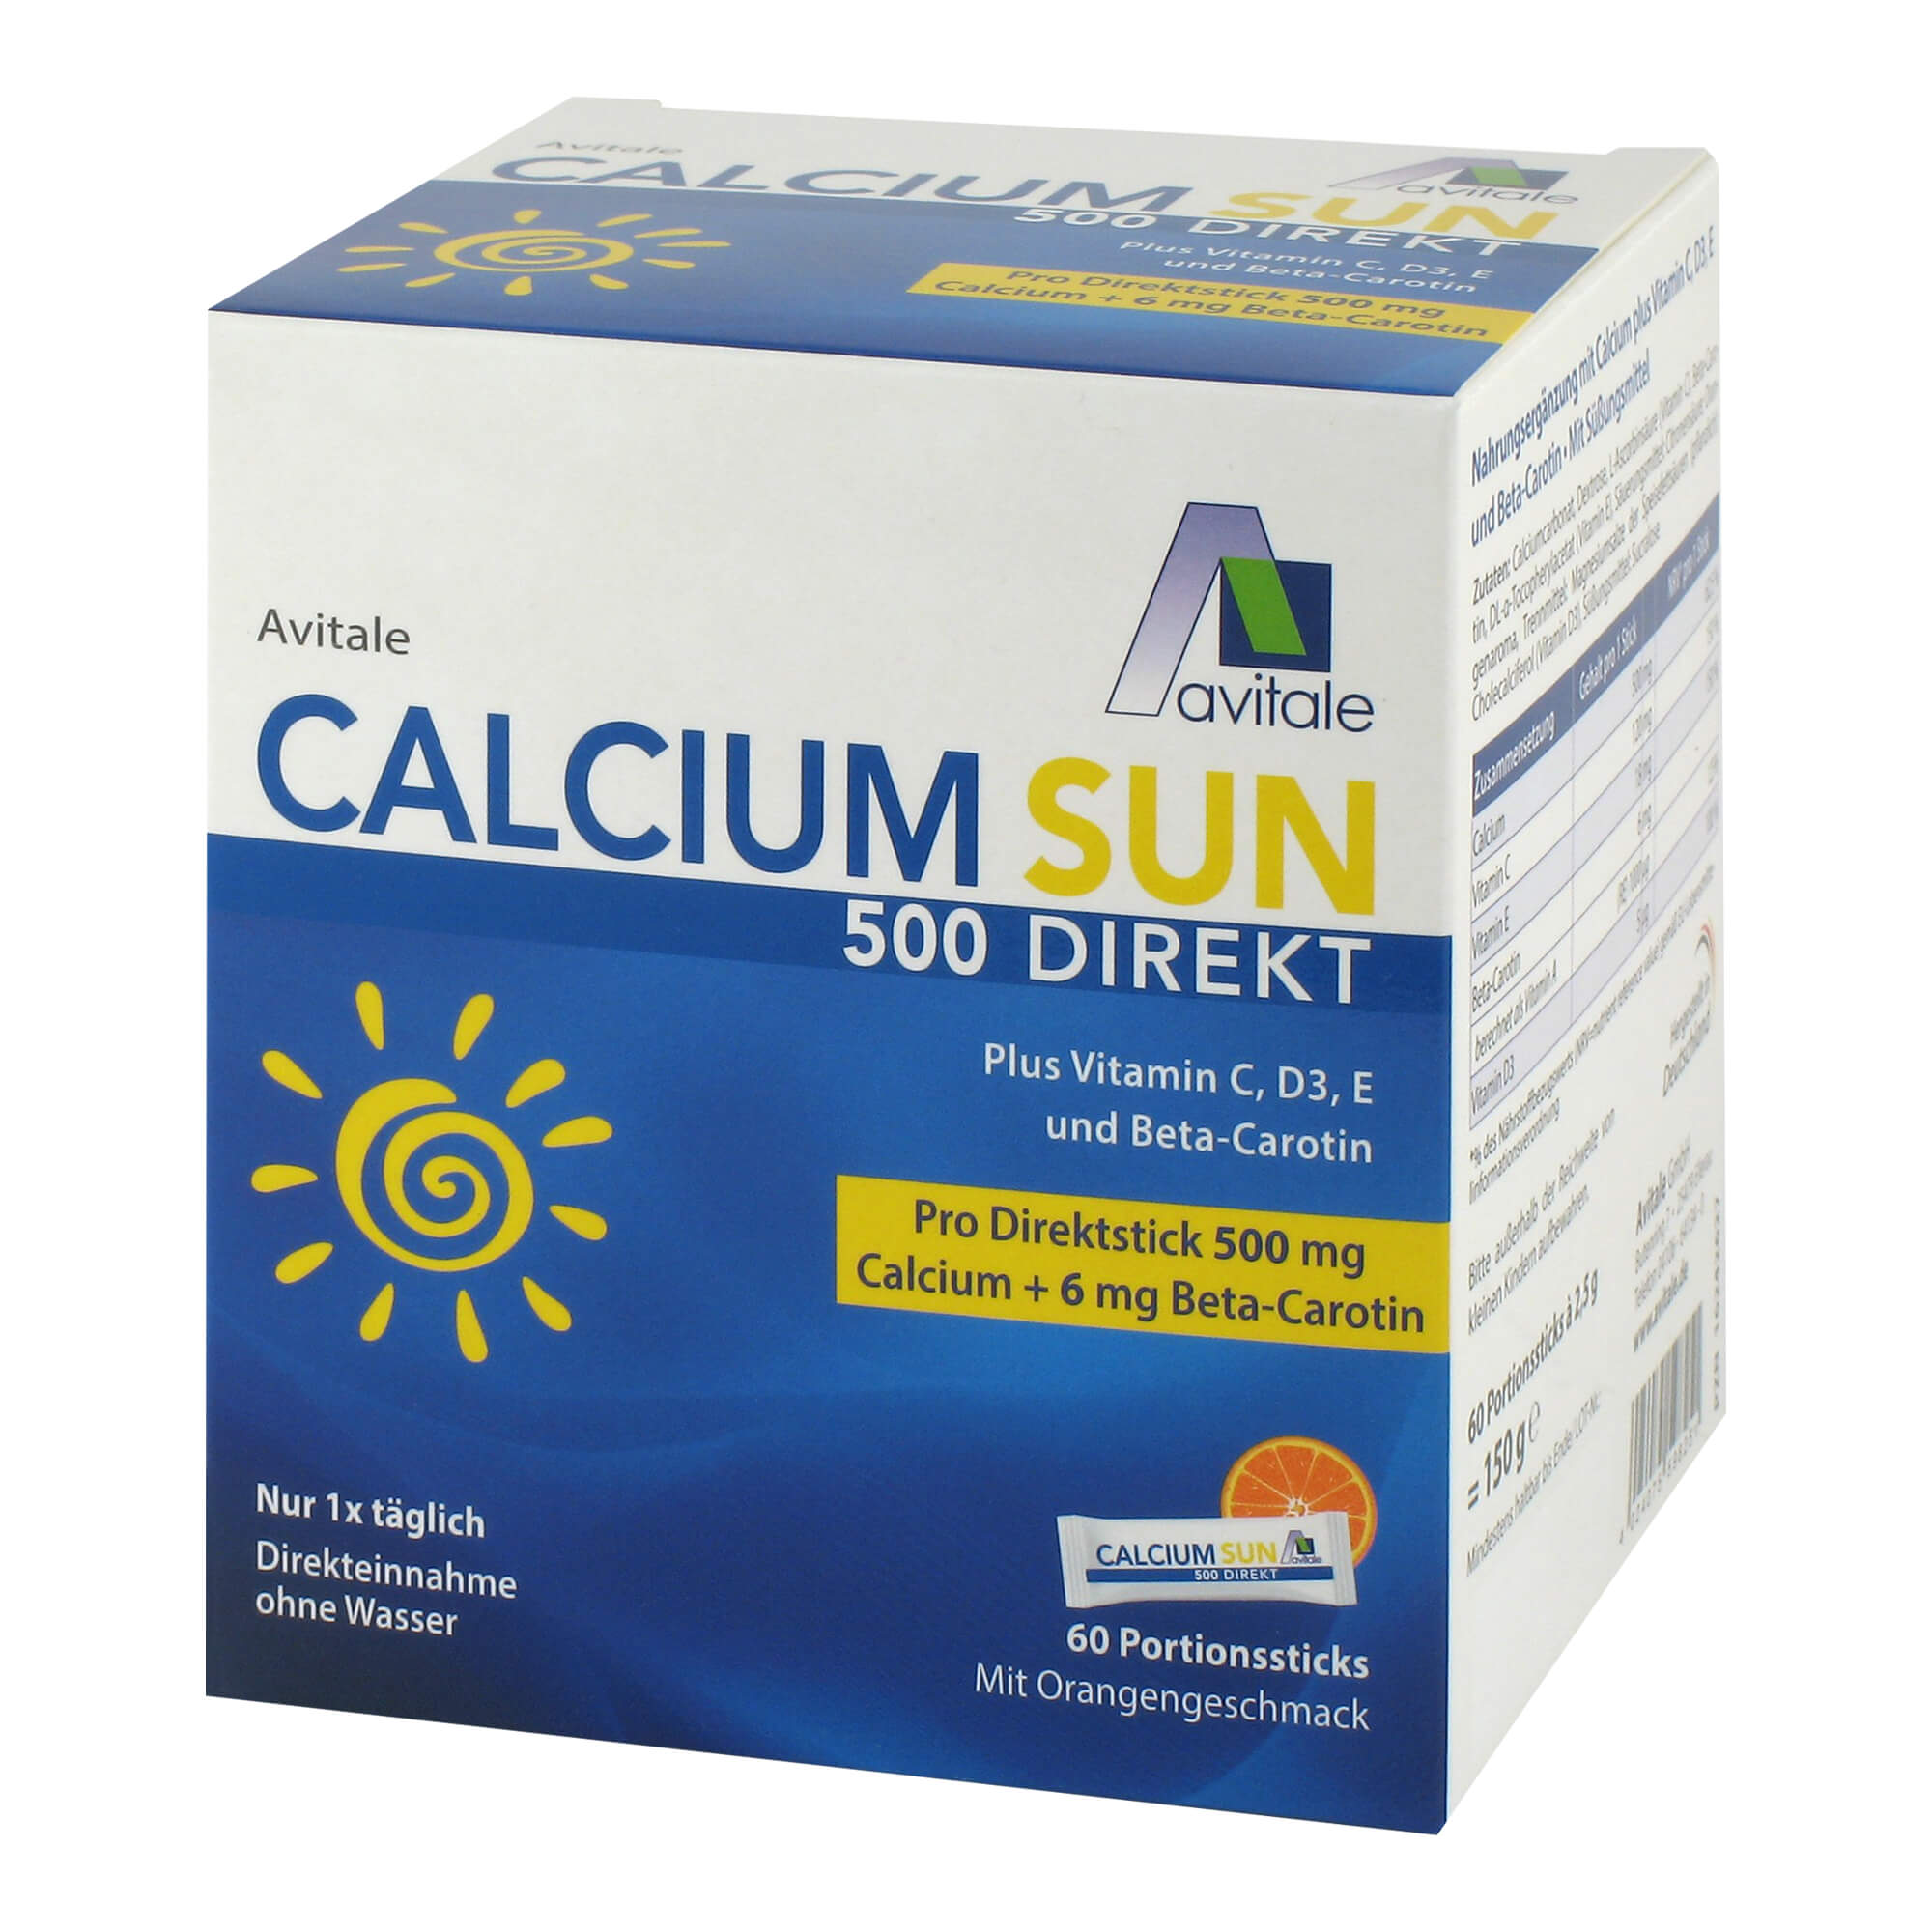 Nahrungsergänzung mit Calcium plus Vitamin C, D3, E und Beta-Carotin.